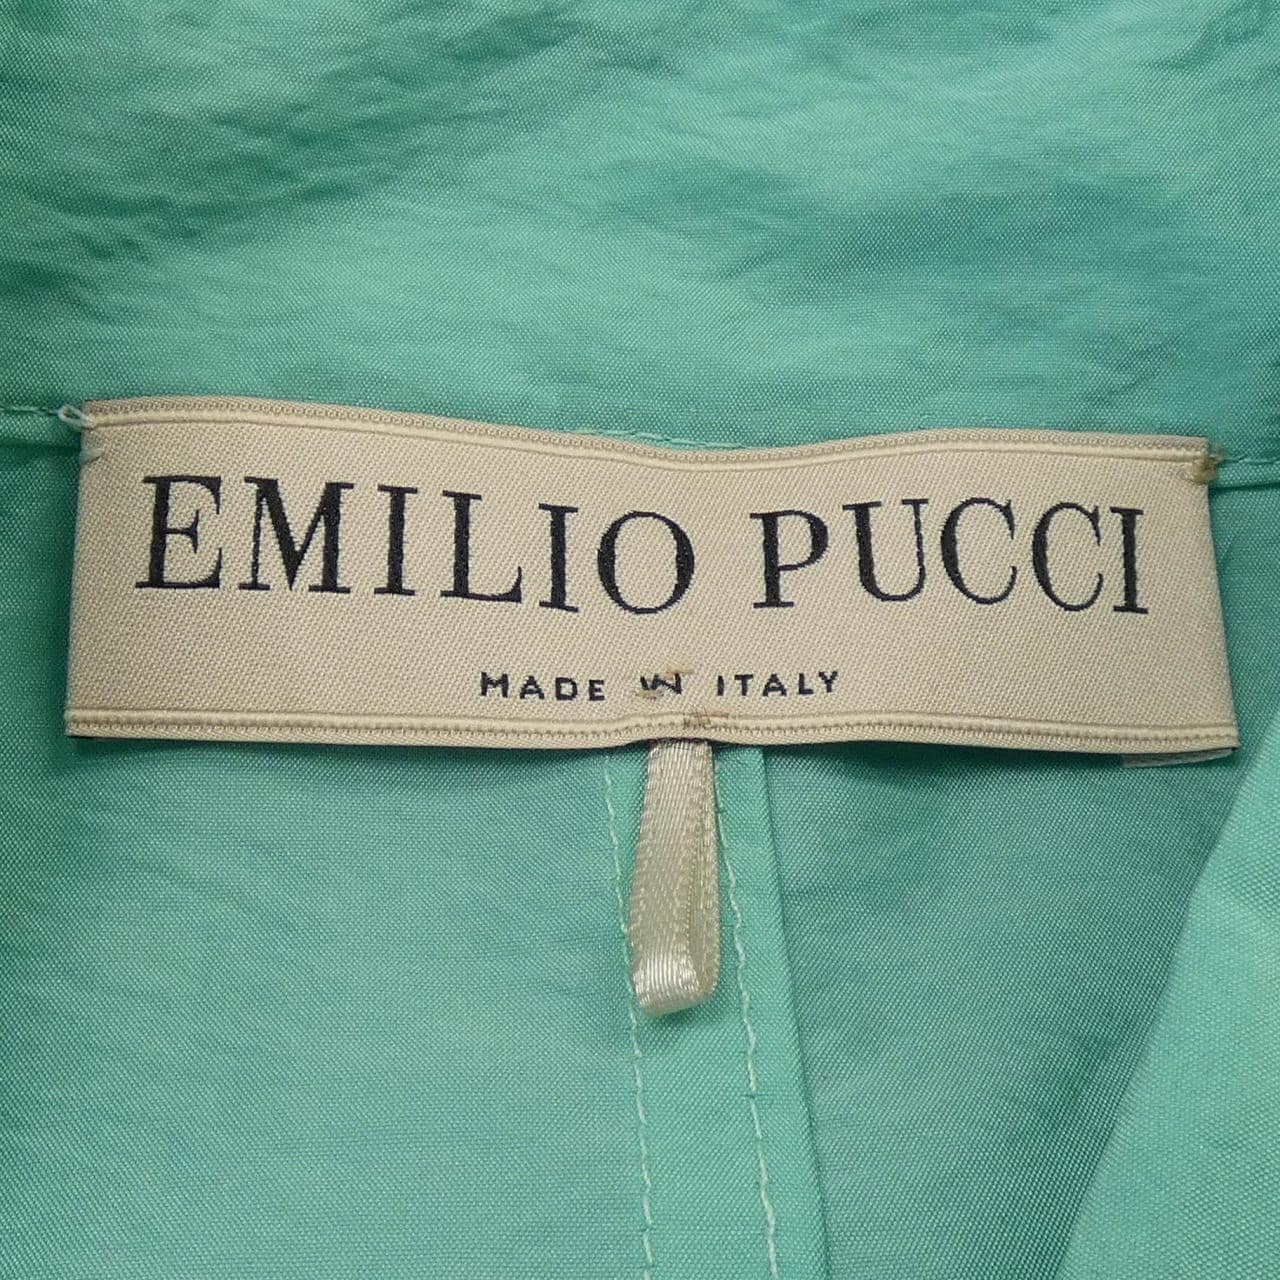 Emiliopchi EMILIO PUCCI大衣